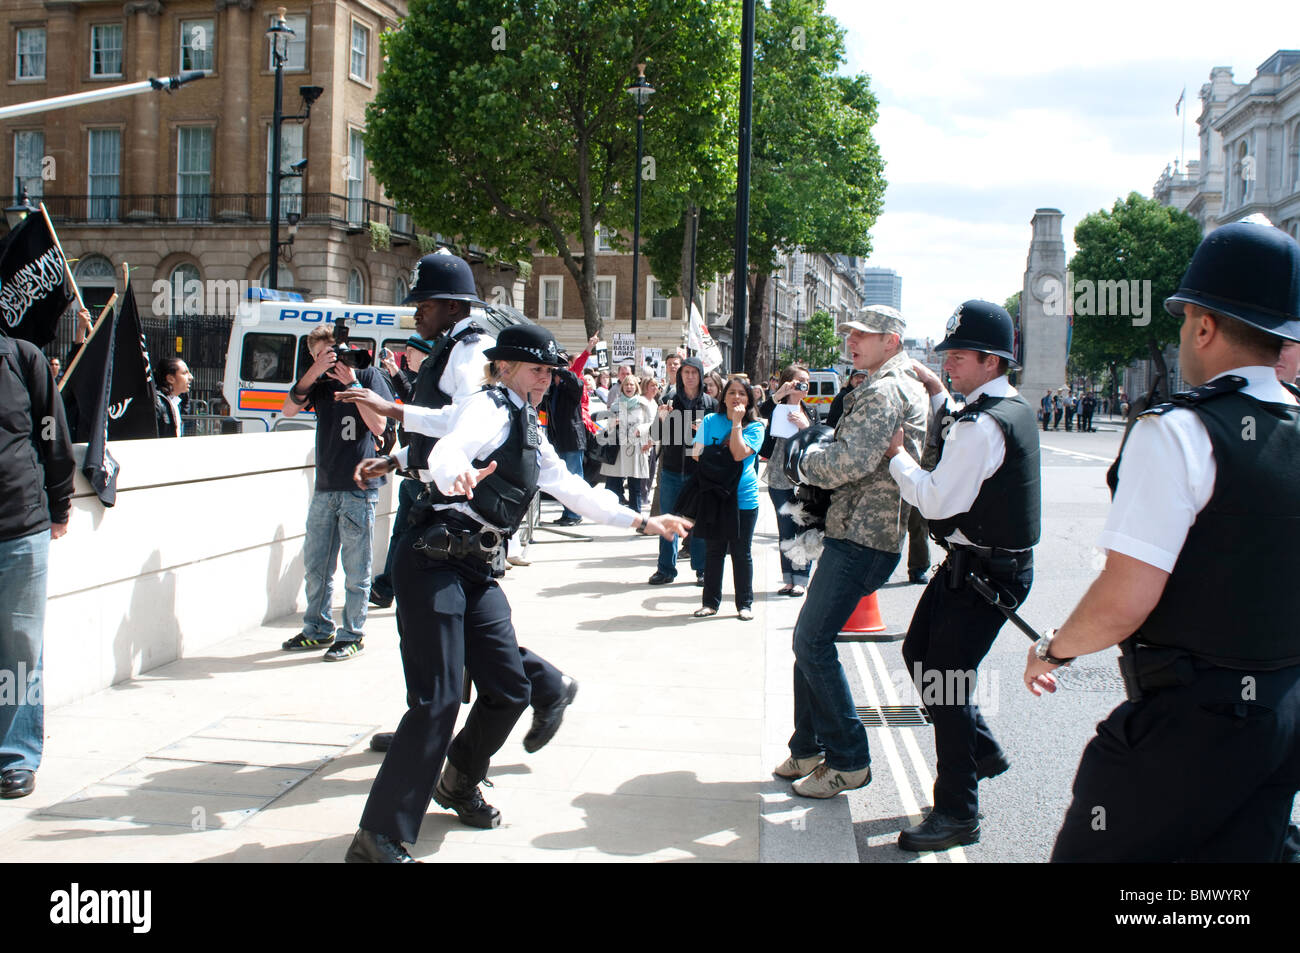 Polizia cattura l'uomo che ha insultato la Sharia manifestanti, Whitehall, LONDRA, REGNO UNITO, 20 giugno 2010 Foto Stock